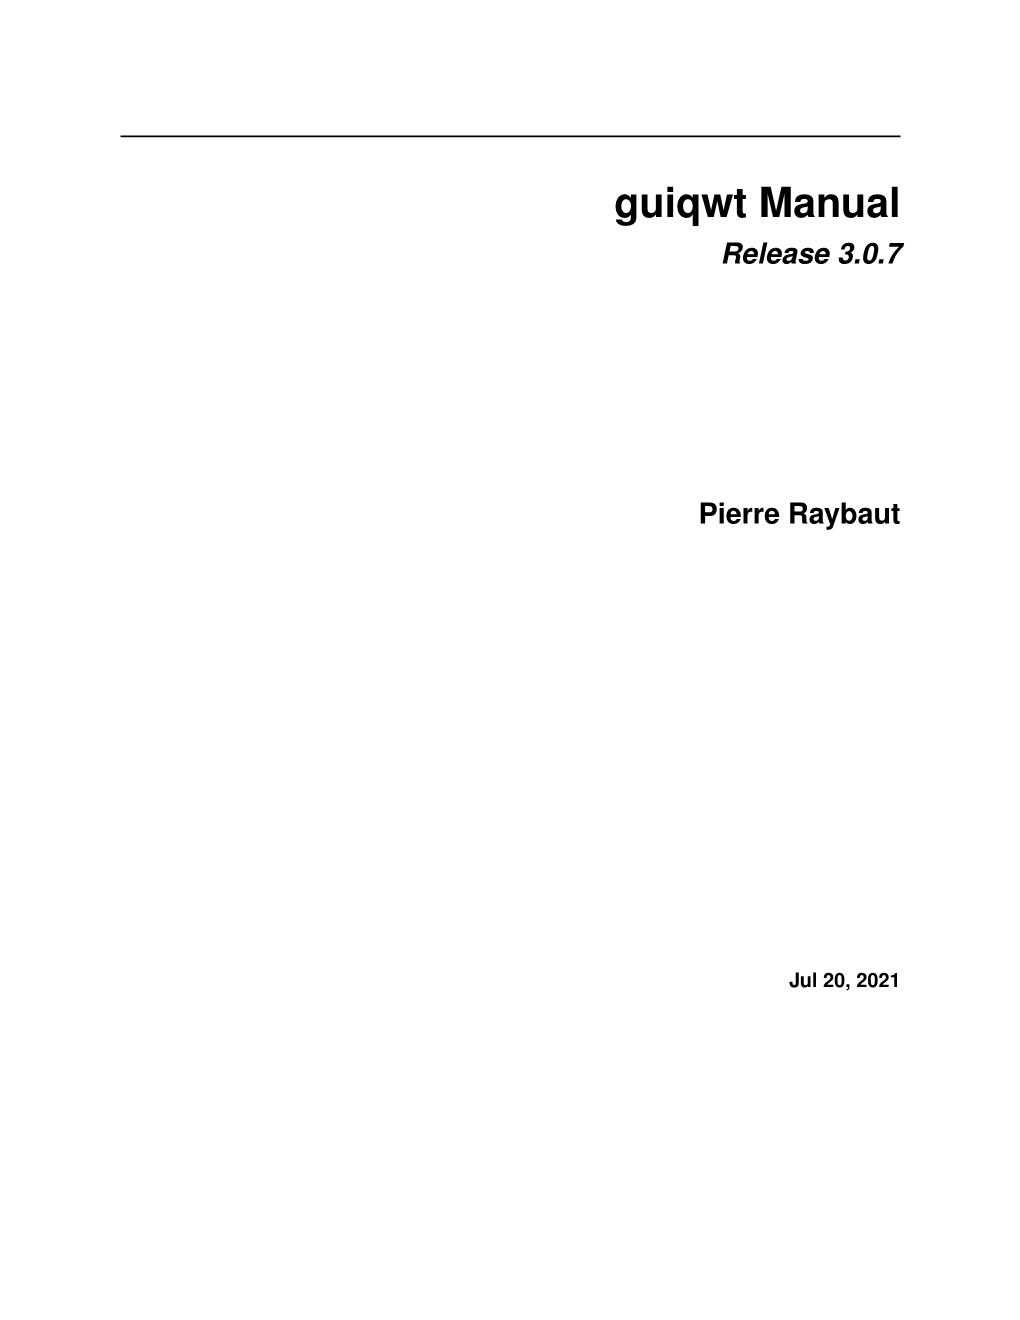 Guiqwt Manual Release 3.0.7 Pierre Raybaut